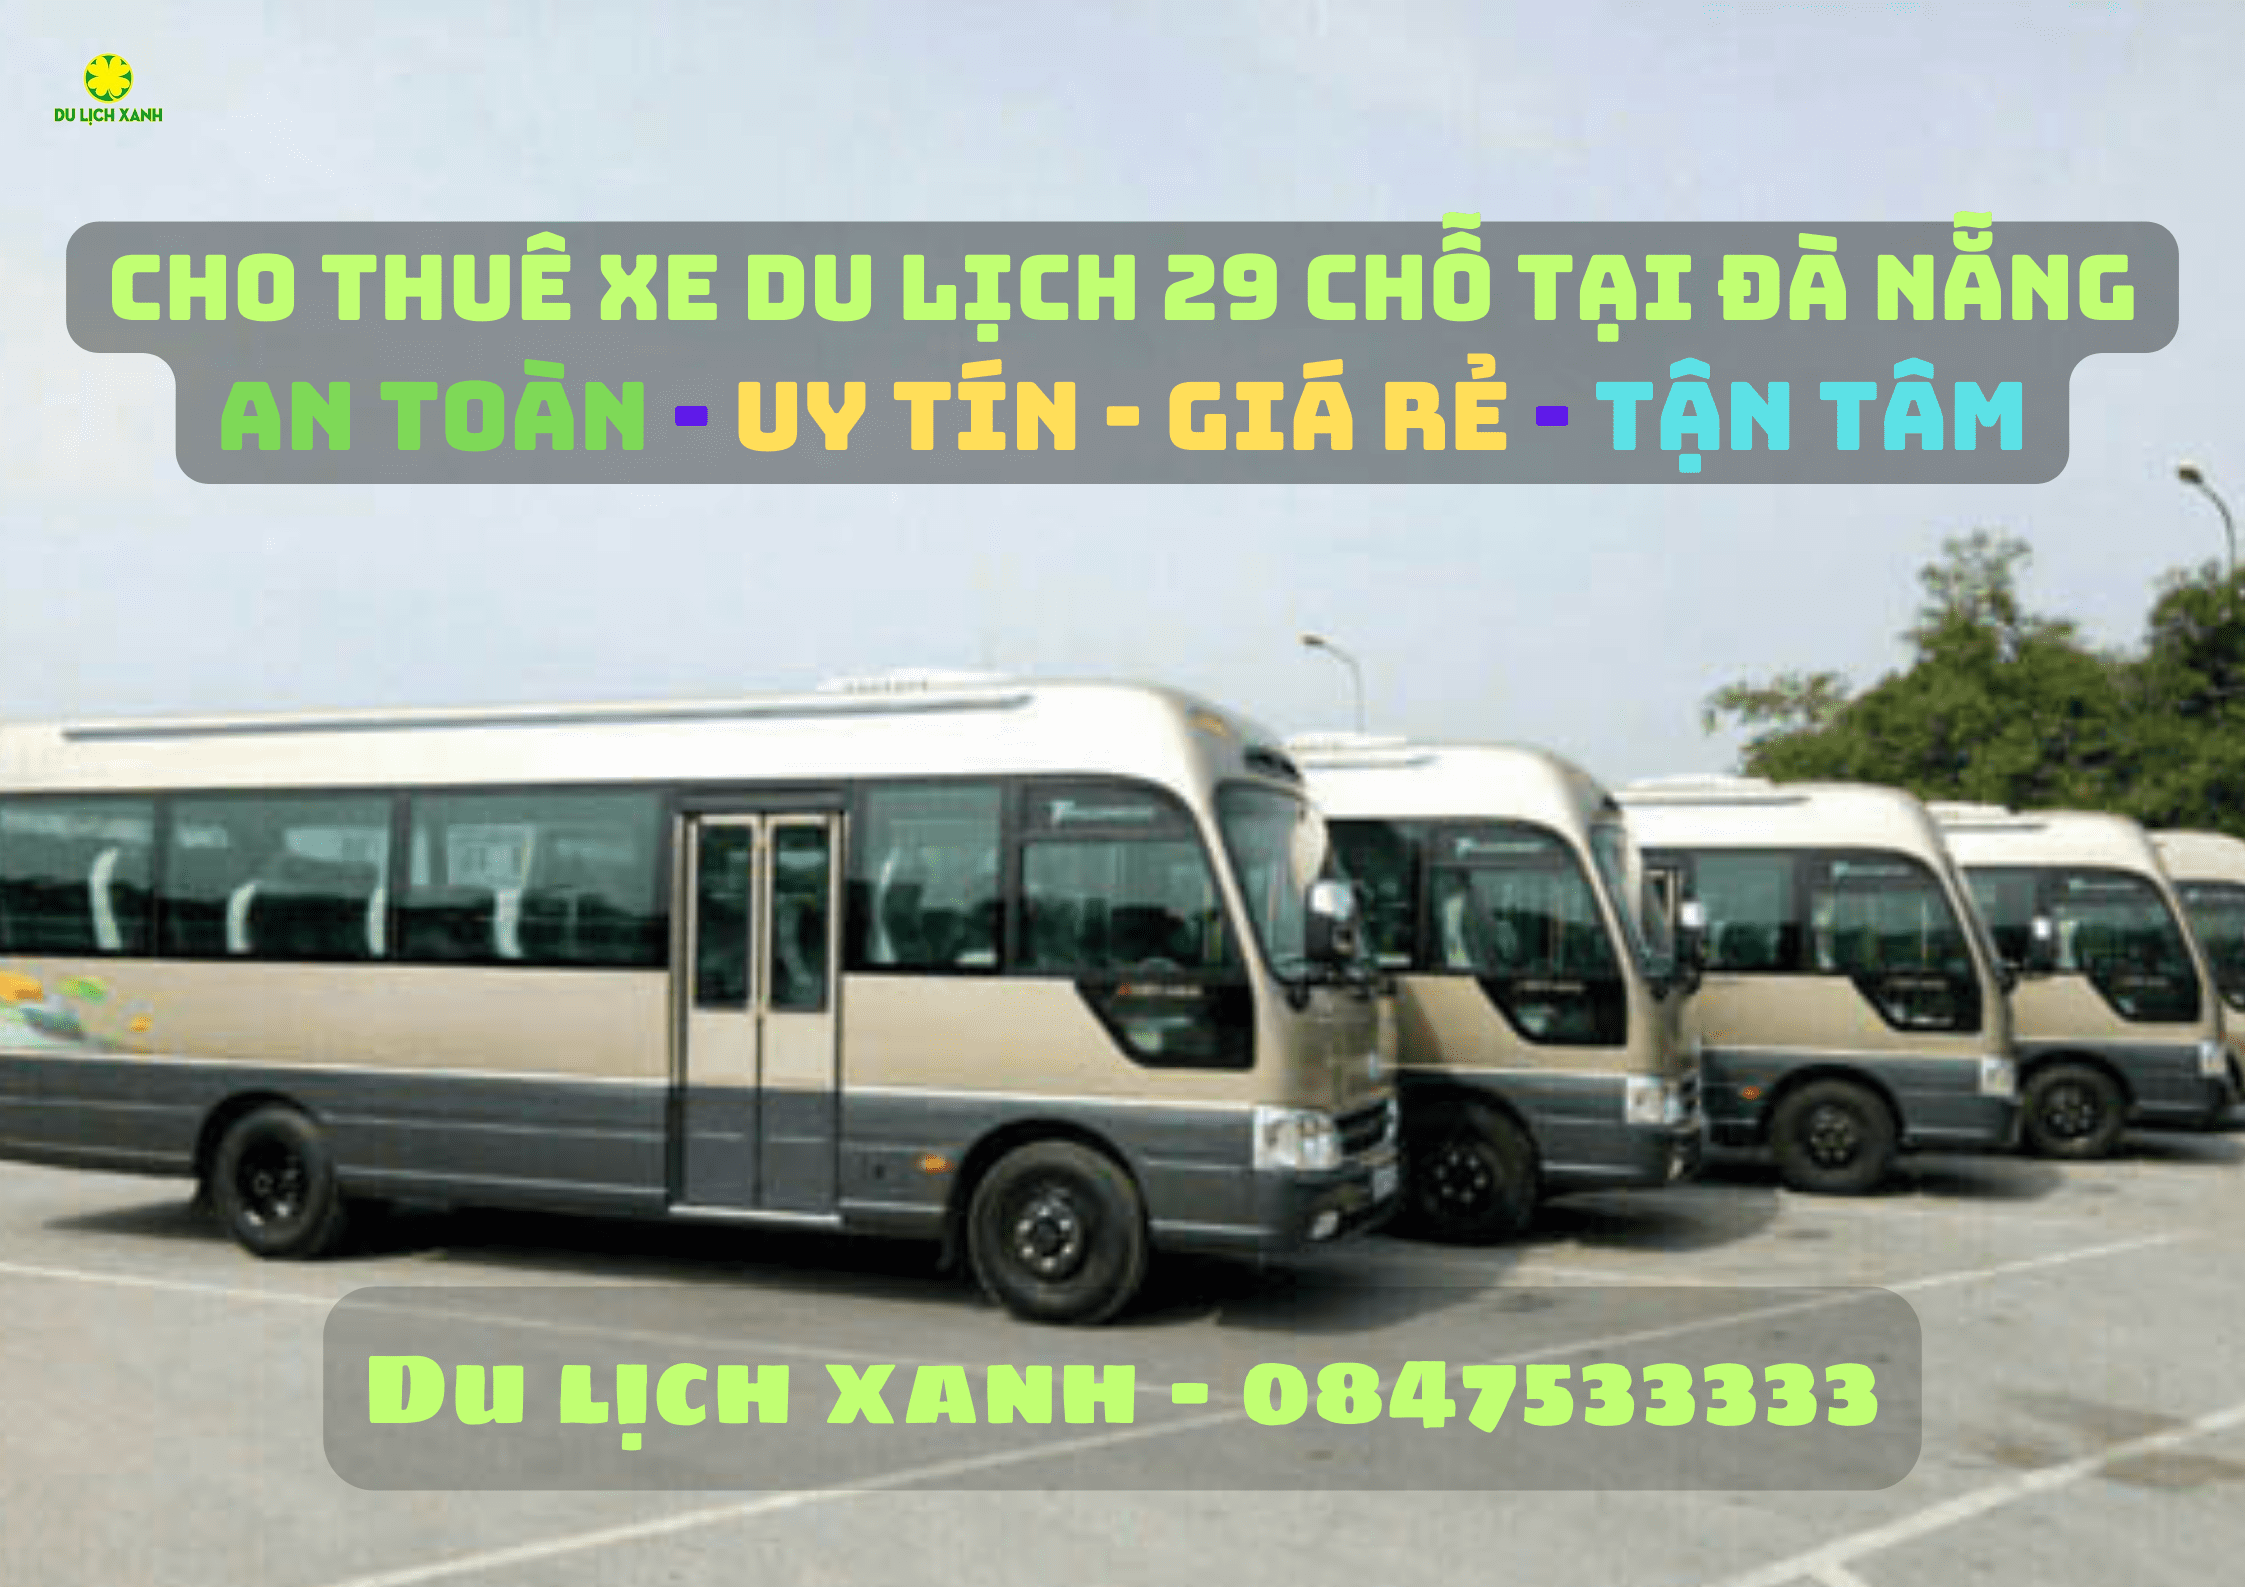 Dịch vụ cho thuê xe du lịch 29 chỗ tại Đà Nẵng